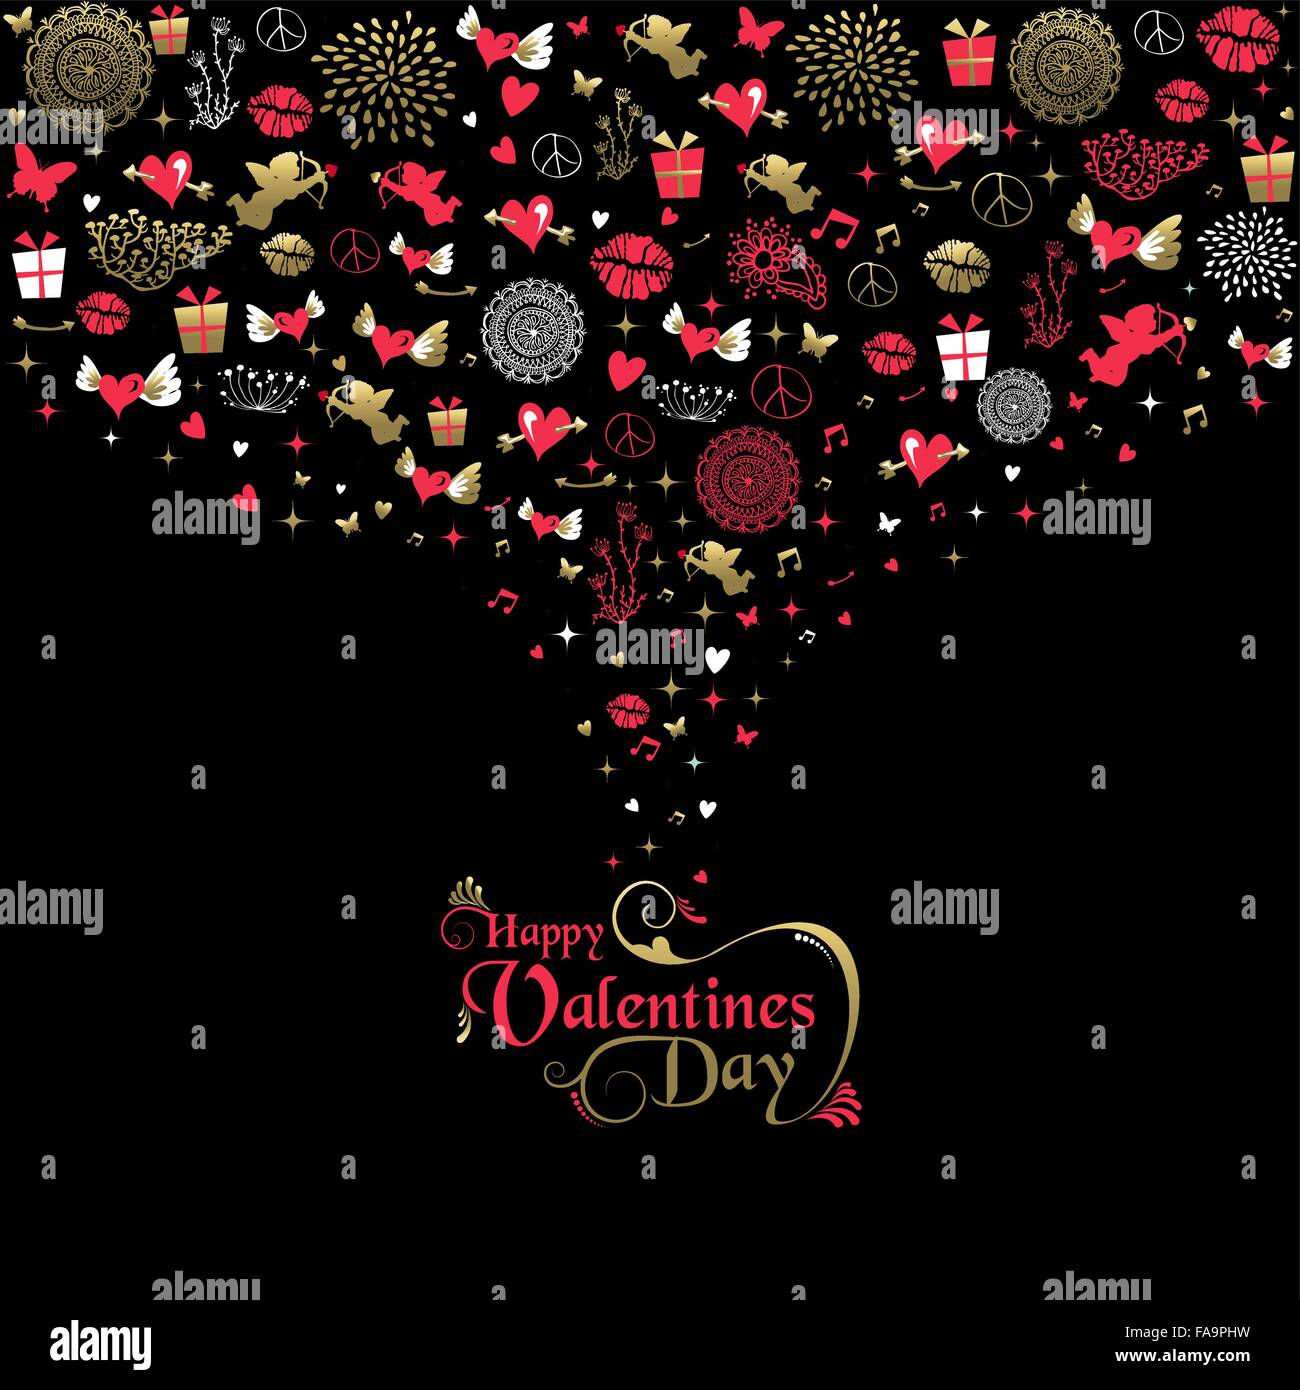 Happy Valentines Day greeting card, vintage icone di stile in oro e colori rosa con etichetta di testo design. EPS10 vettore. Illustrazione Vettoriale